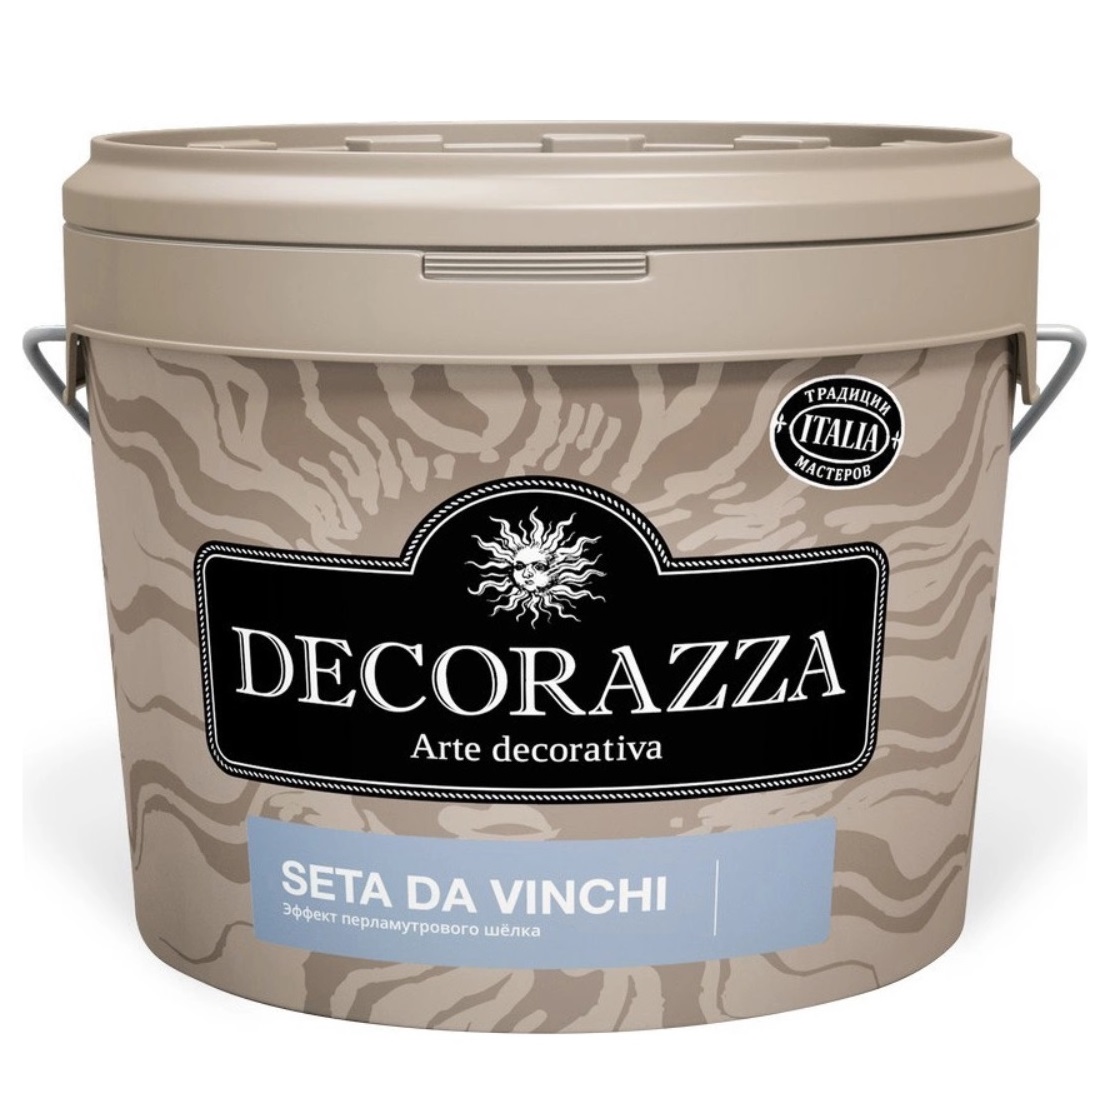 Где купить Декоративное покрытие с  более выраженным эффектом перламутрового шёлка Decorazza dz seta da vinci sd 001. 5 кг Decorazza 